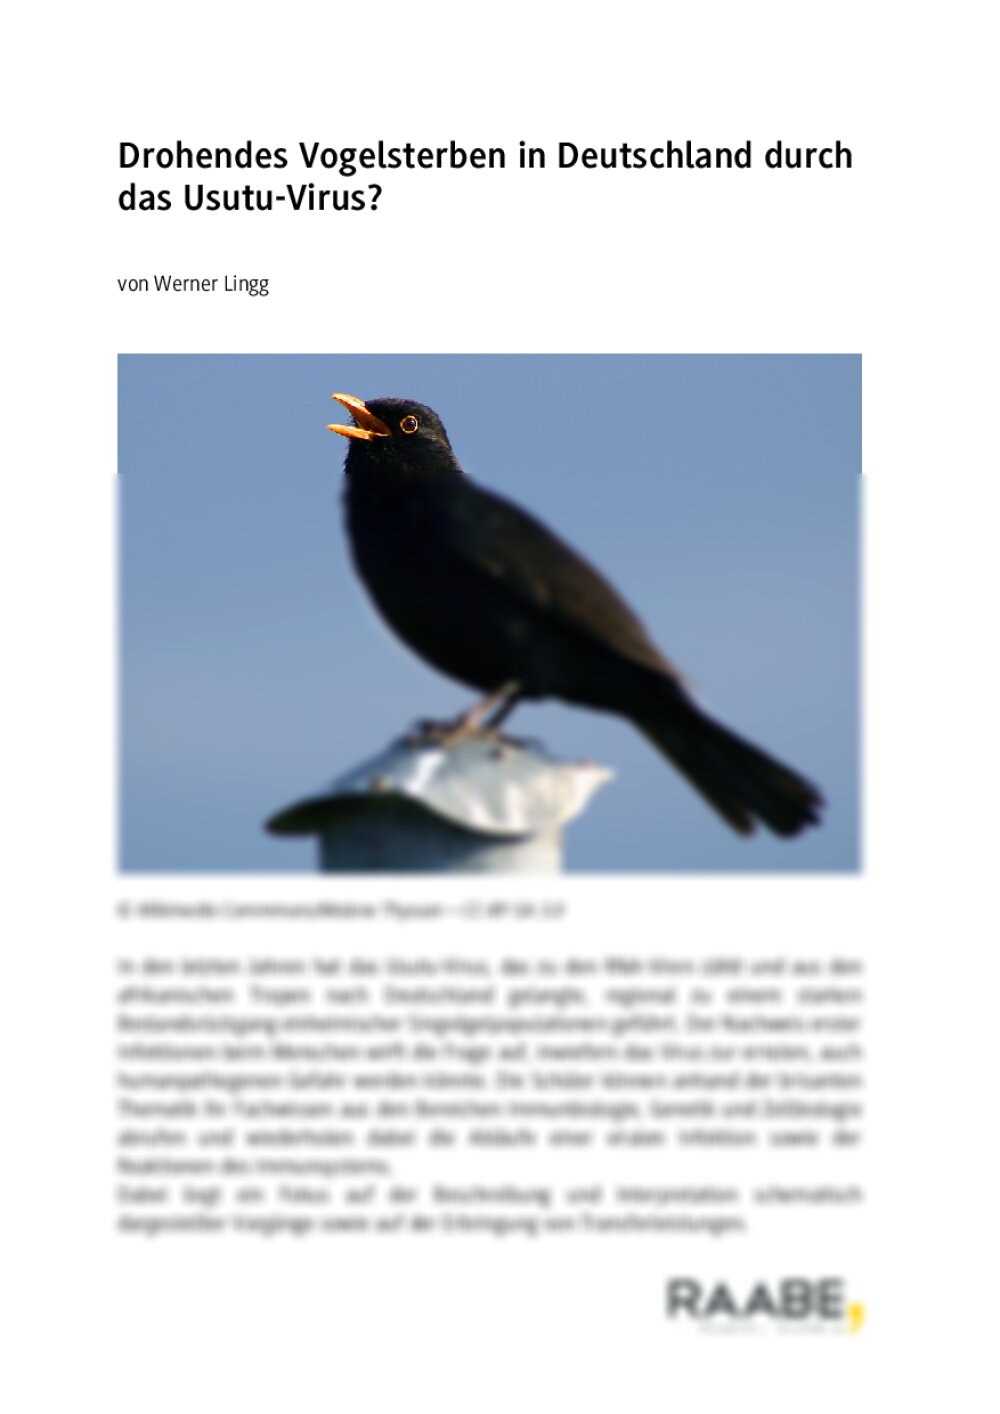 Drohendes Vogelsterben durch das Usutu-Virus - Seite 1